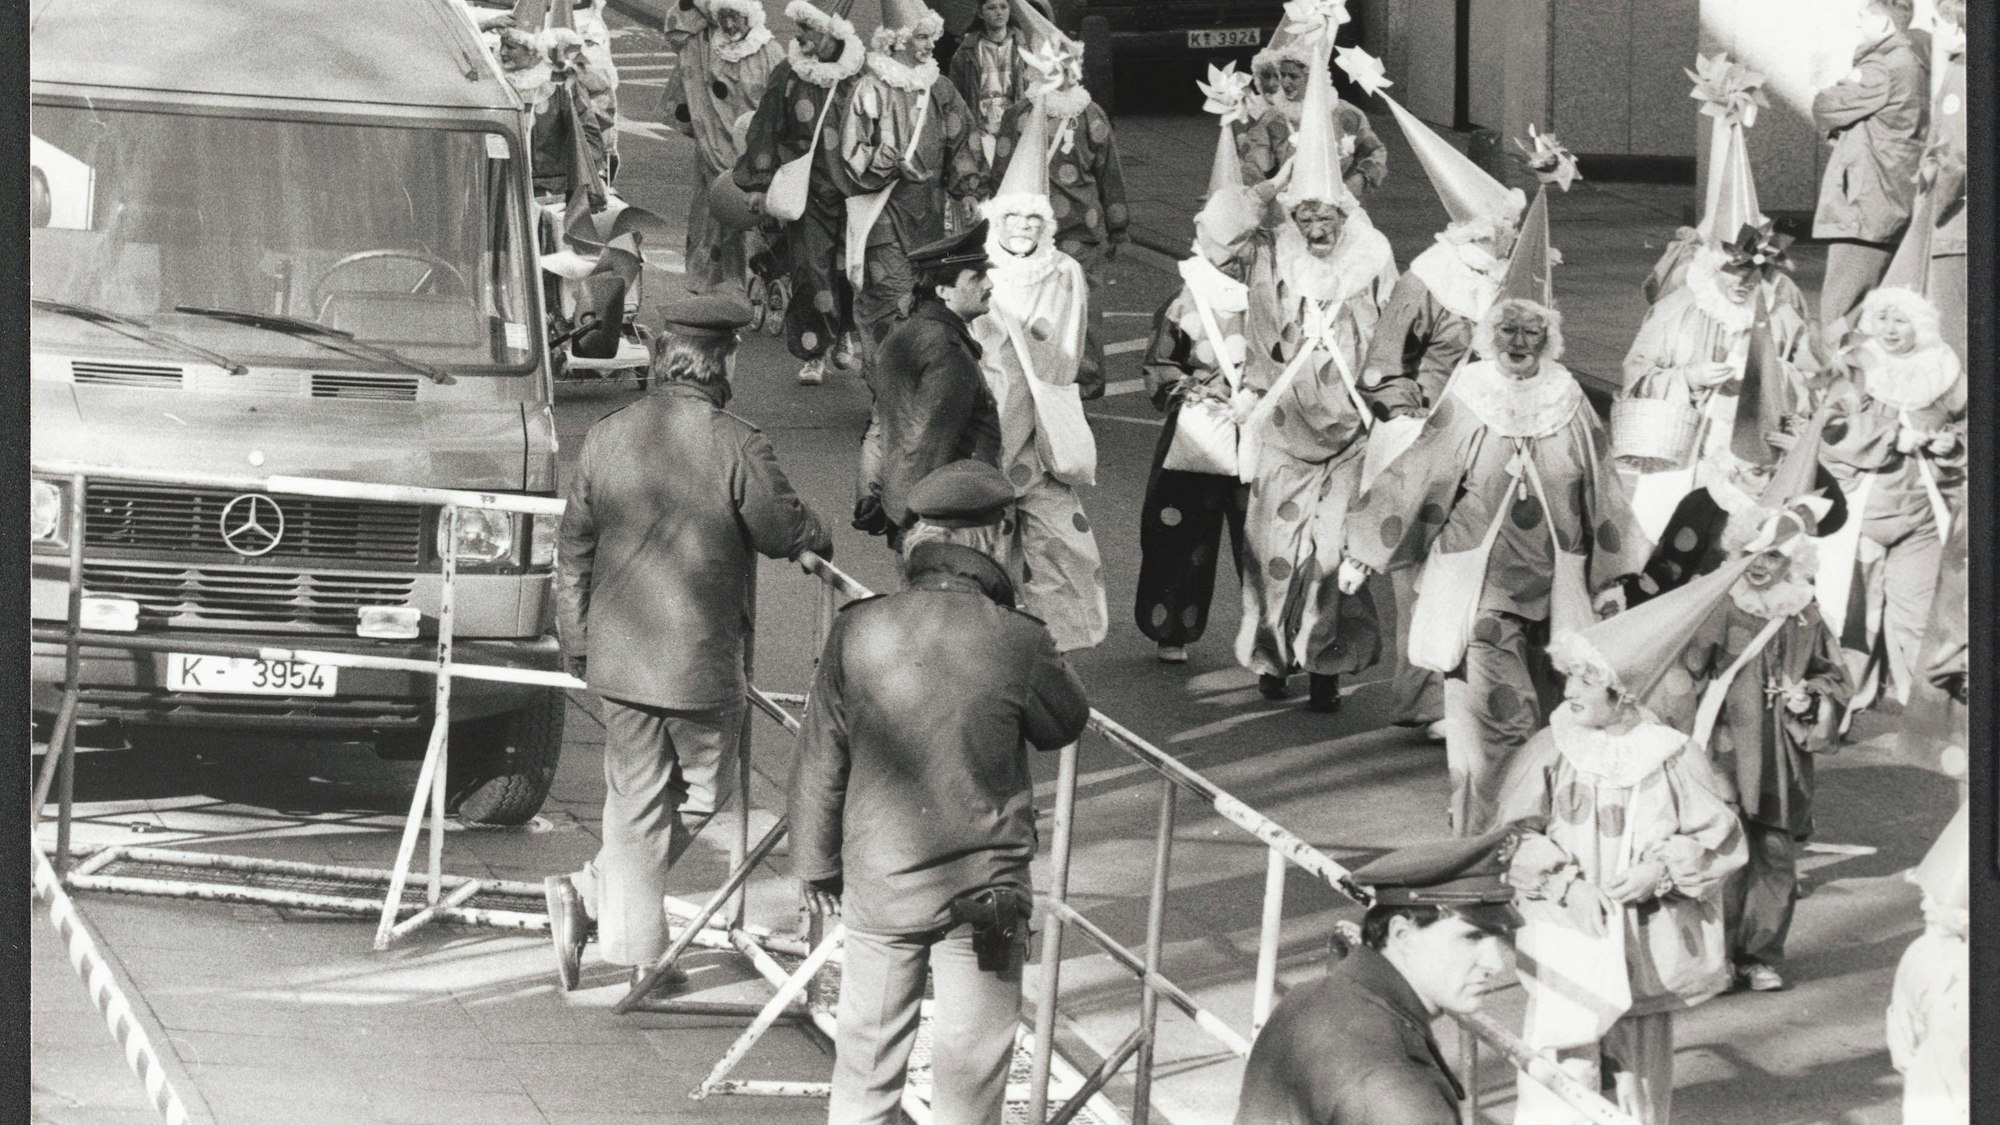 Köln - Karneval - Karnevalssonntag 1988 - Mord - "Karnevalszug marschiert an Frauenleiche vorbei" - 10 Meter vom Zugweg entfernt vom Zugweg liegt eine ermordete Frau hinter einer Reibekuchenbude an der Albertusstraße - Foto vom 14.02.1988